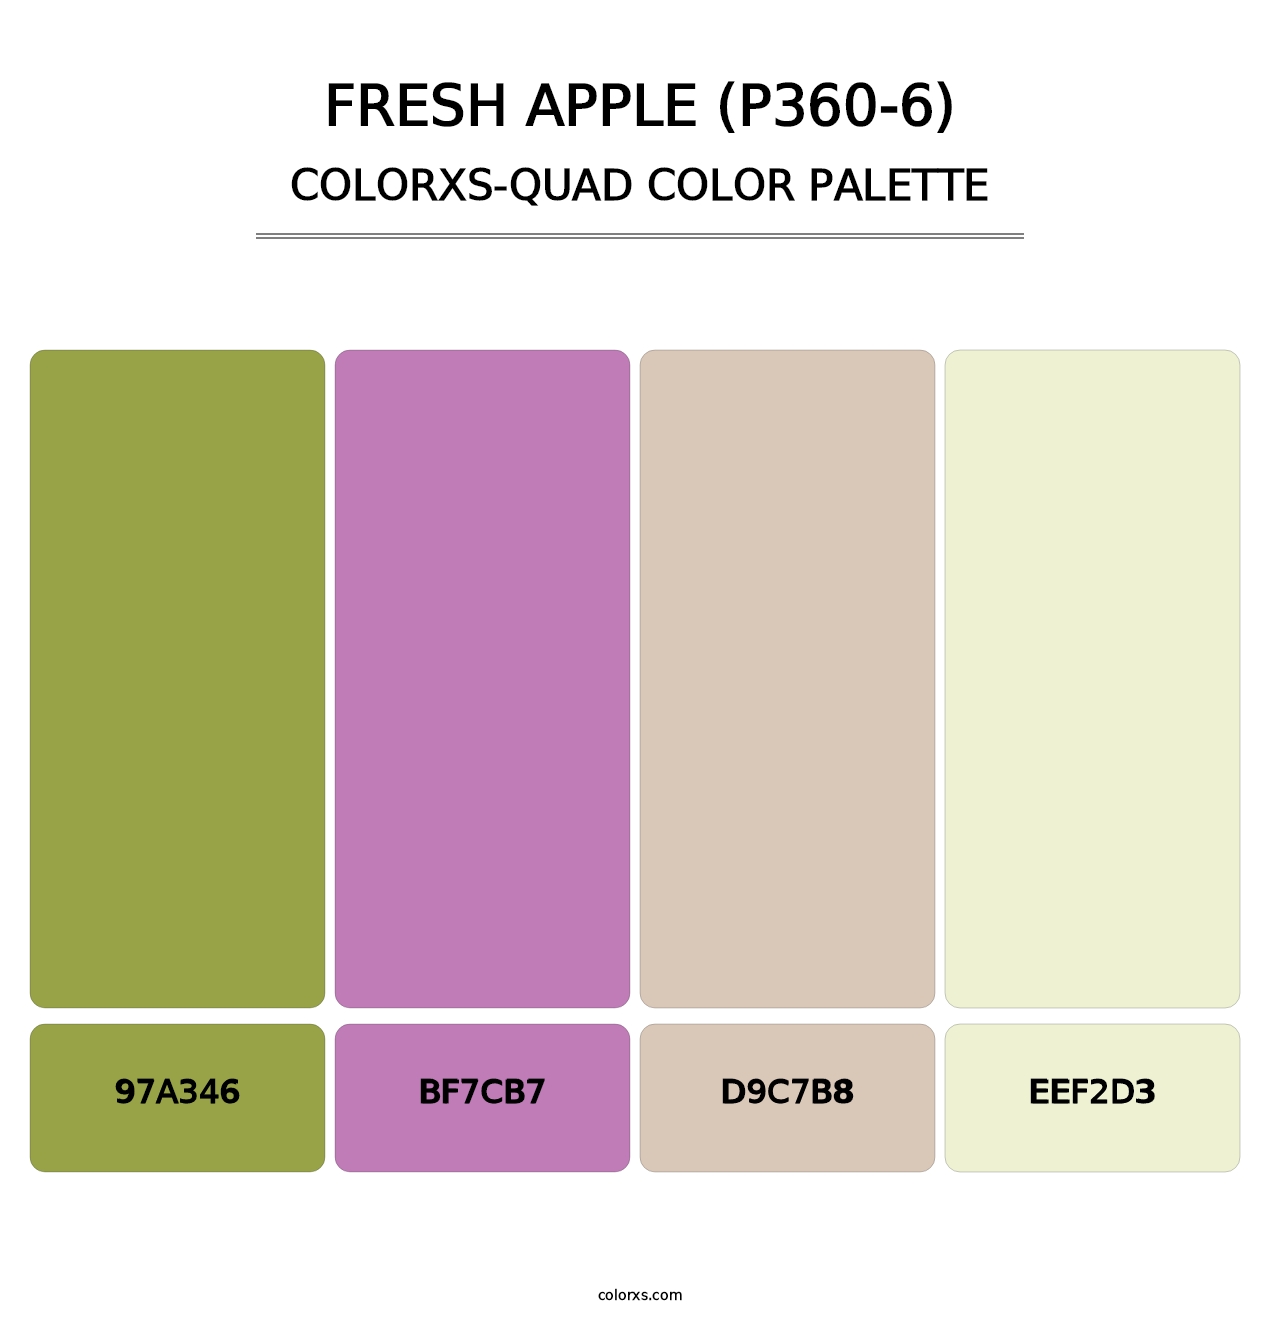 Fresh Apple (P360-6) - Colorxs Quad Palette